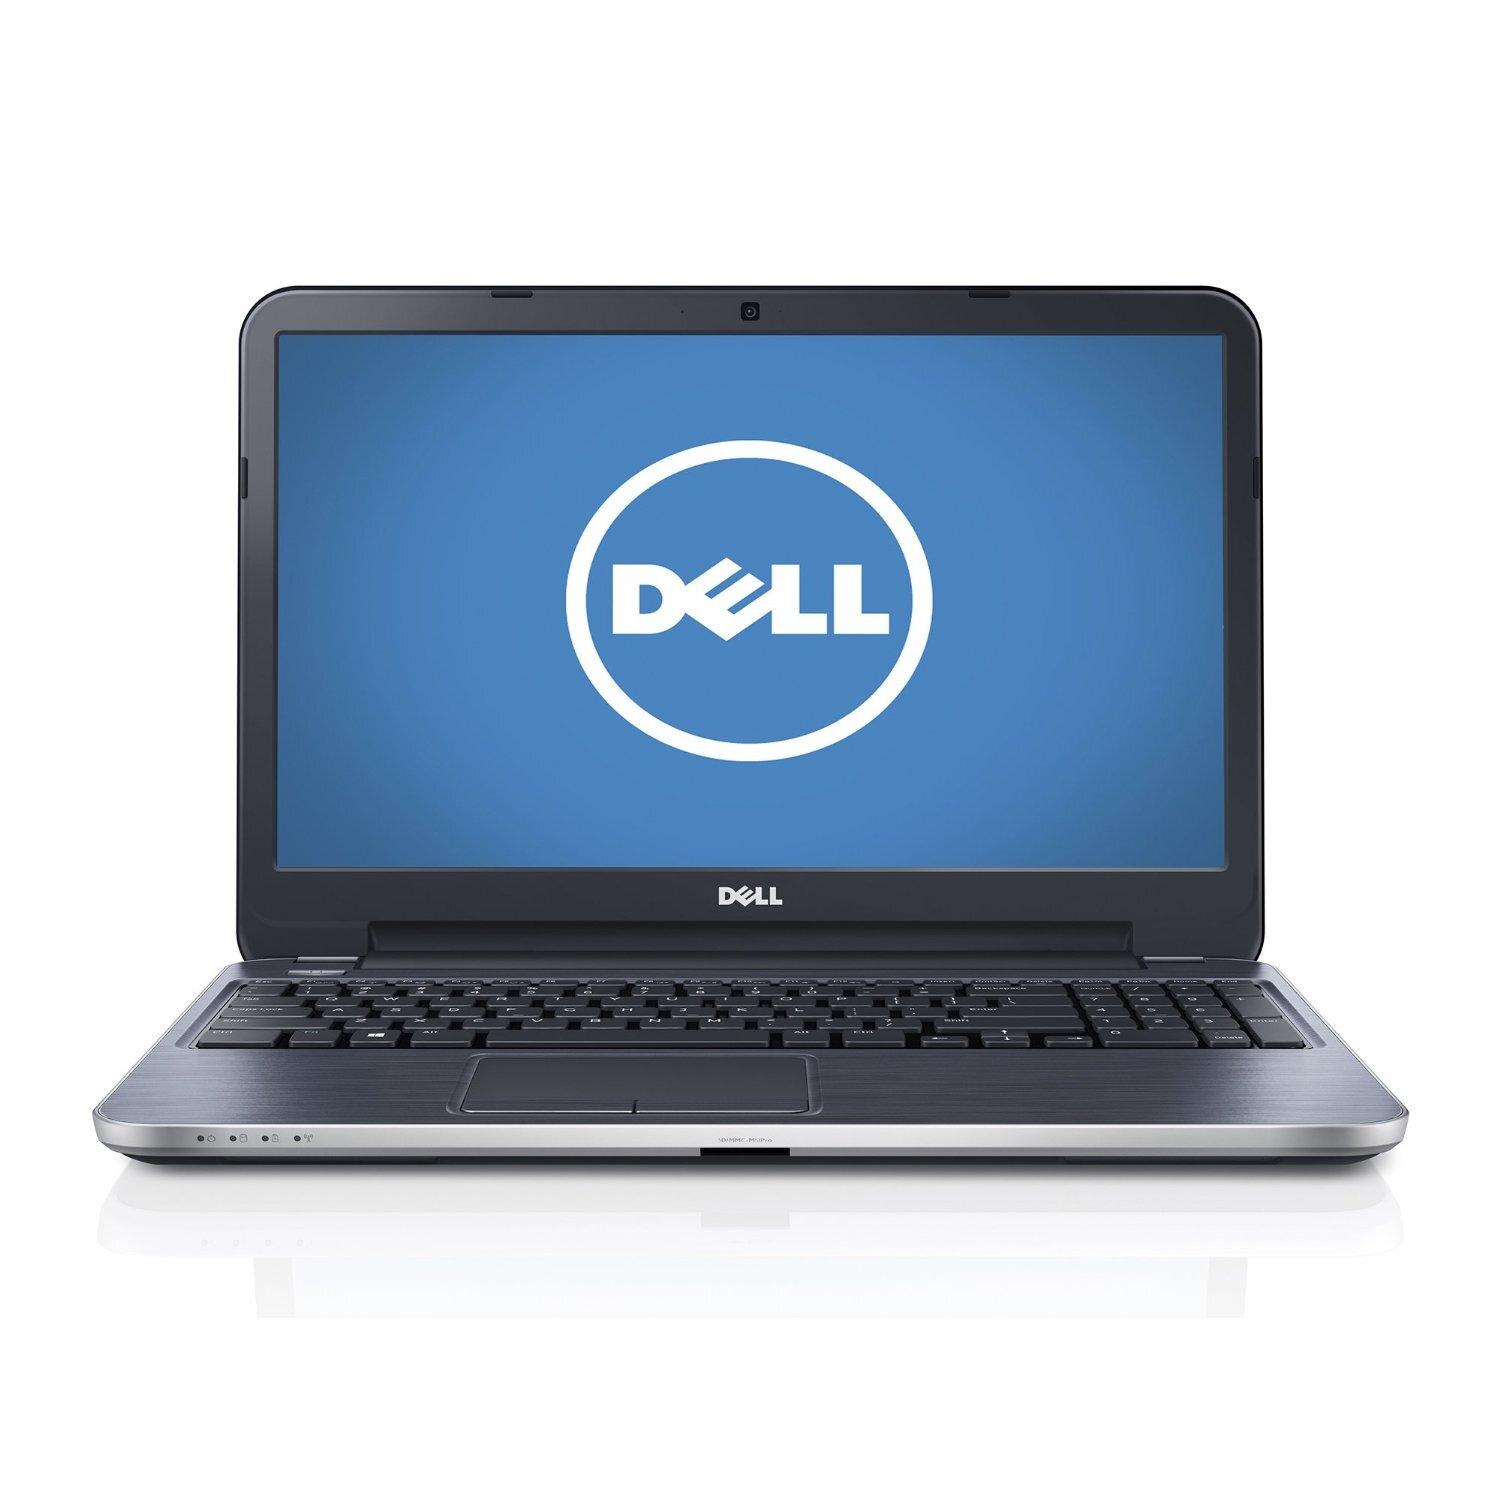 Laptop Dell Inspiron 15R N5537 (1403202) - Intel Core i3-4010U 1.7GHz, 4GB RAM, 500GB HDD, Intel HD Graphics HD 4400, 15.6 inch